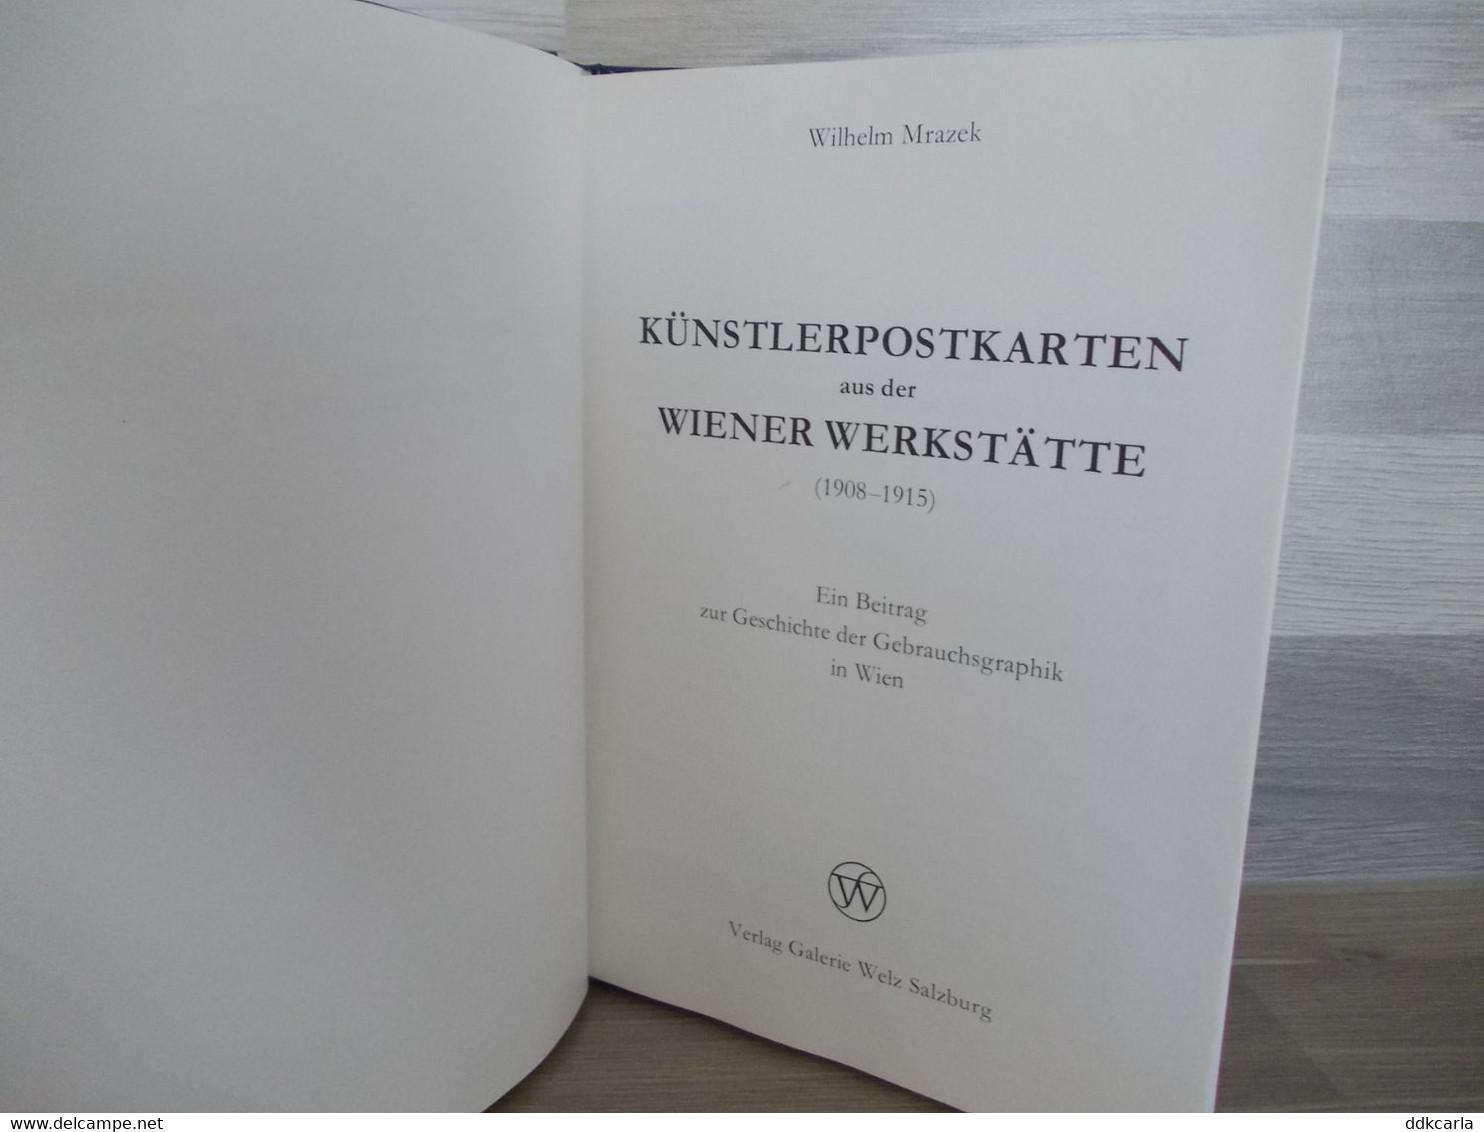 Künstlerpostkarten Aus Der Wiener Werkstätte (1908-1915) - Wilhelm Mrazek - 1Galerie Welz Salzburg - Kunstführer